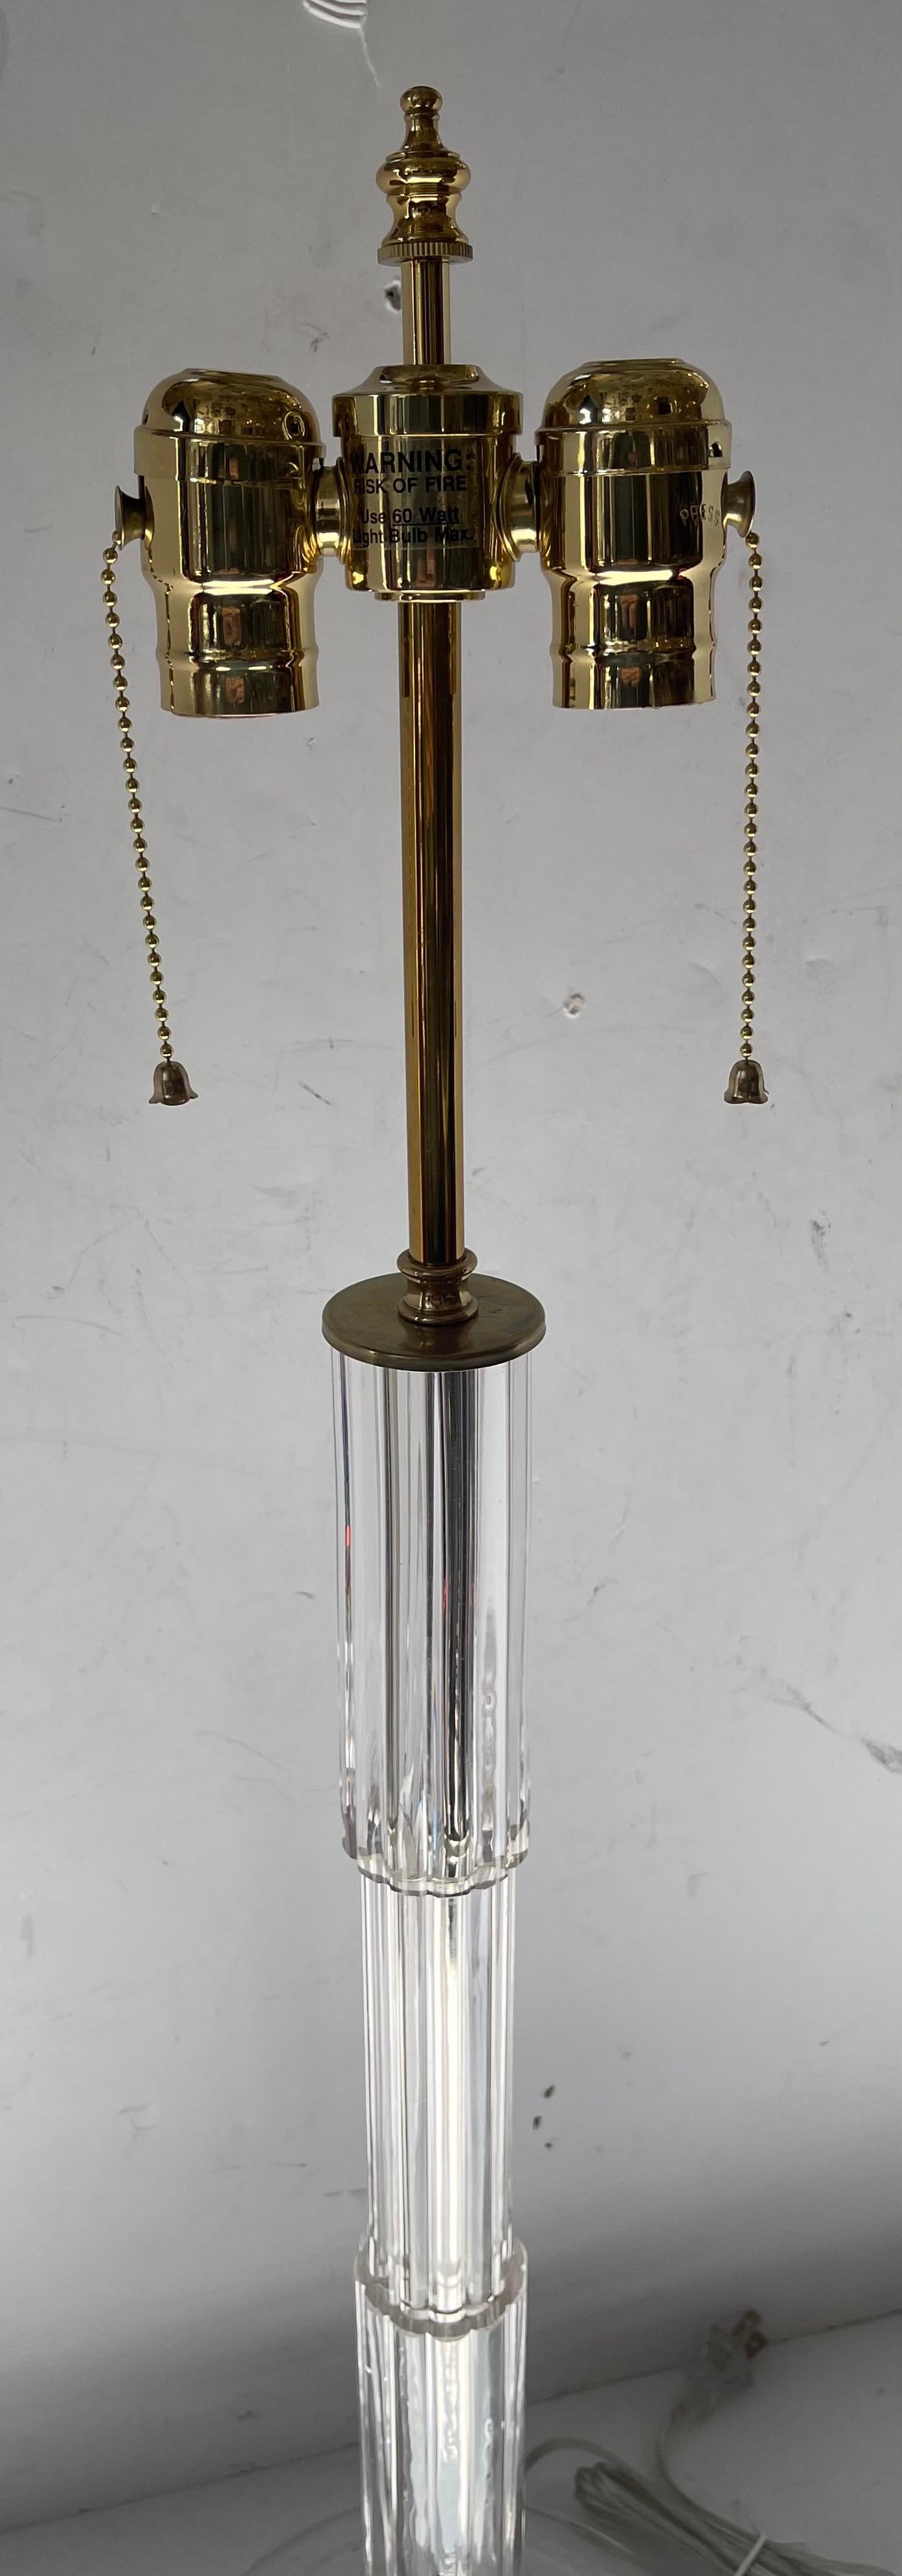 Magnifique lampe à colonne unique en verre clair de Murano et en laiton poli, datant du milieu du siècle dernier et de l'époque Art déco. Cette lampe a été rebranchée avec une nouvelle grappe de deux lampes Edison, vendue par Lorin Marsh NYC.